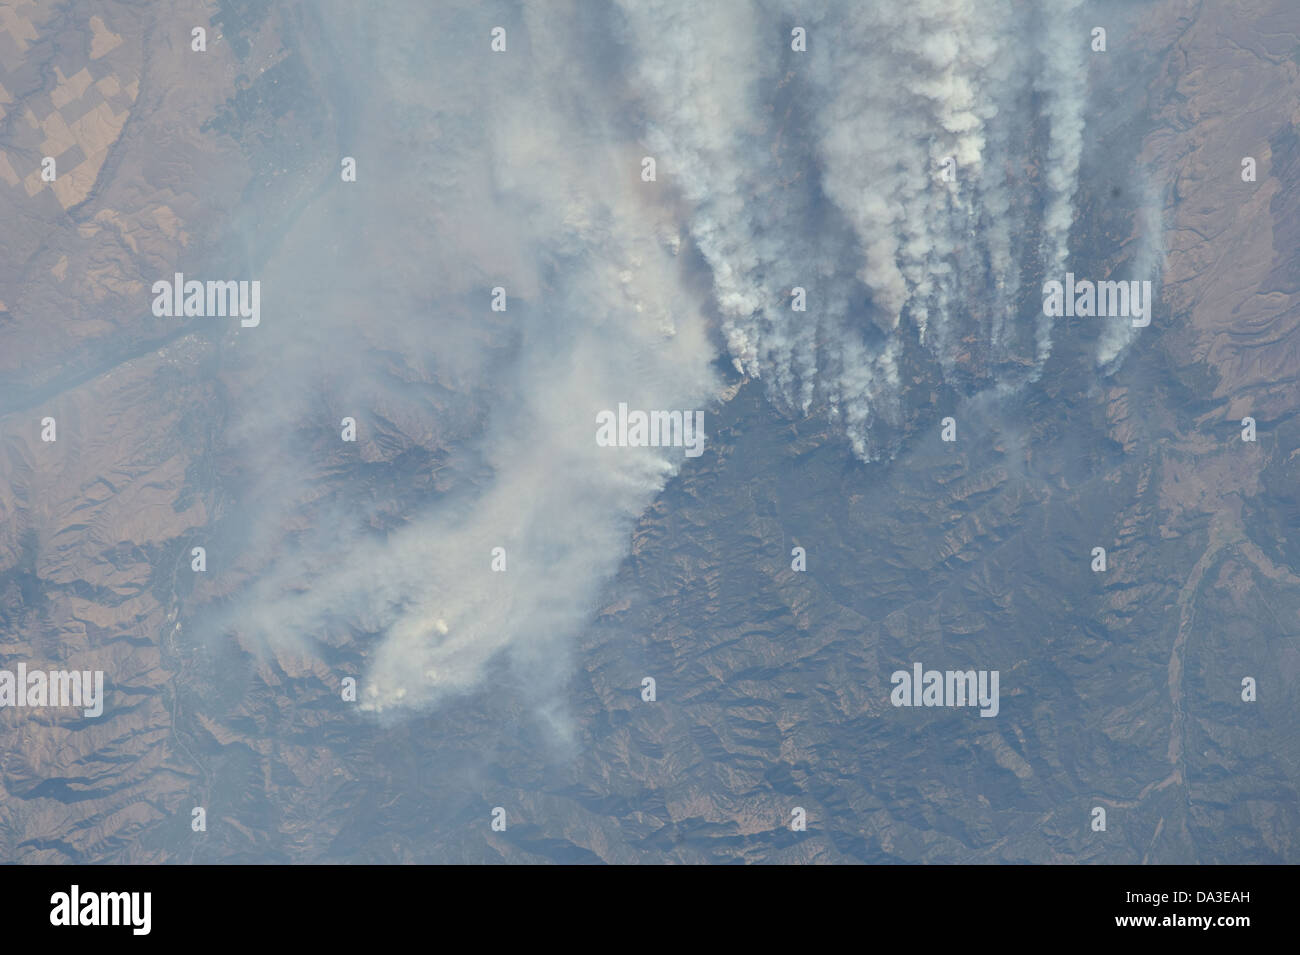 Los incendios forestales Idaho 2012 Expedición 33 a bordo de la Estación Espacial Internacional Foto de stock